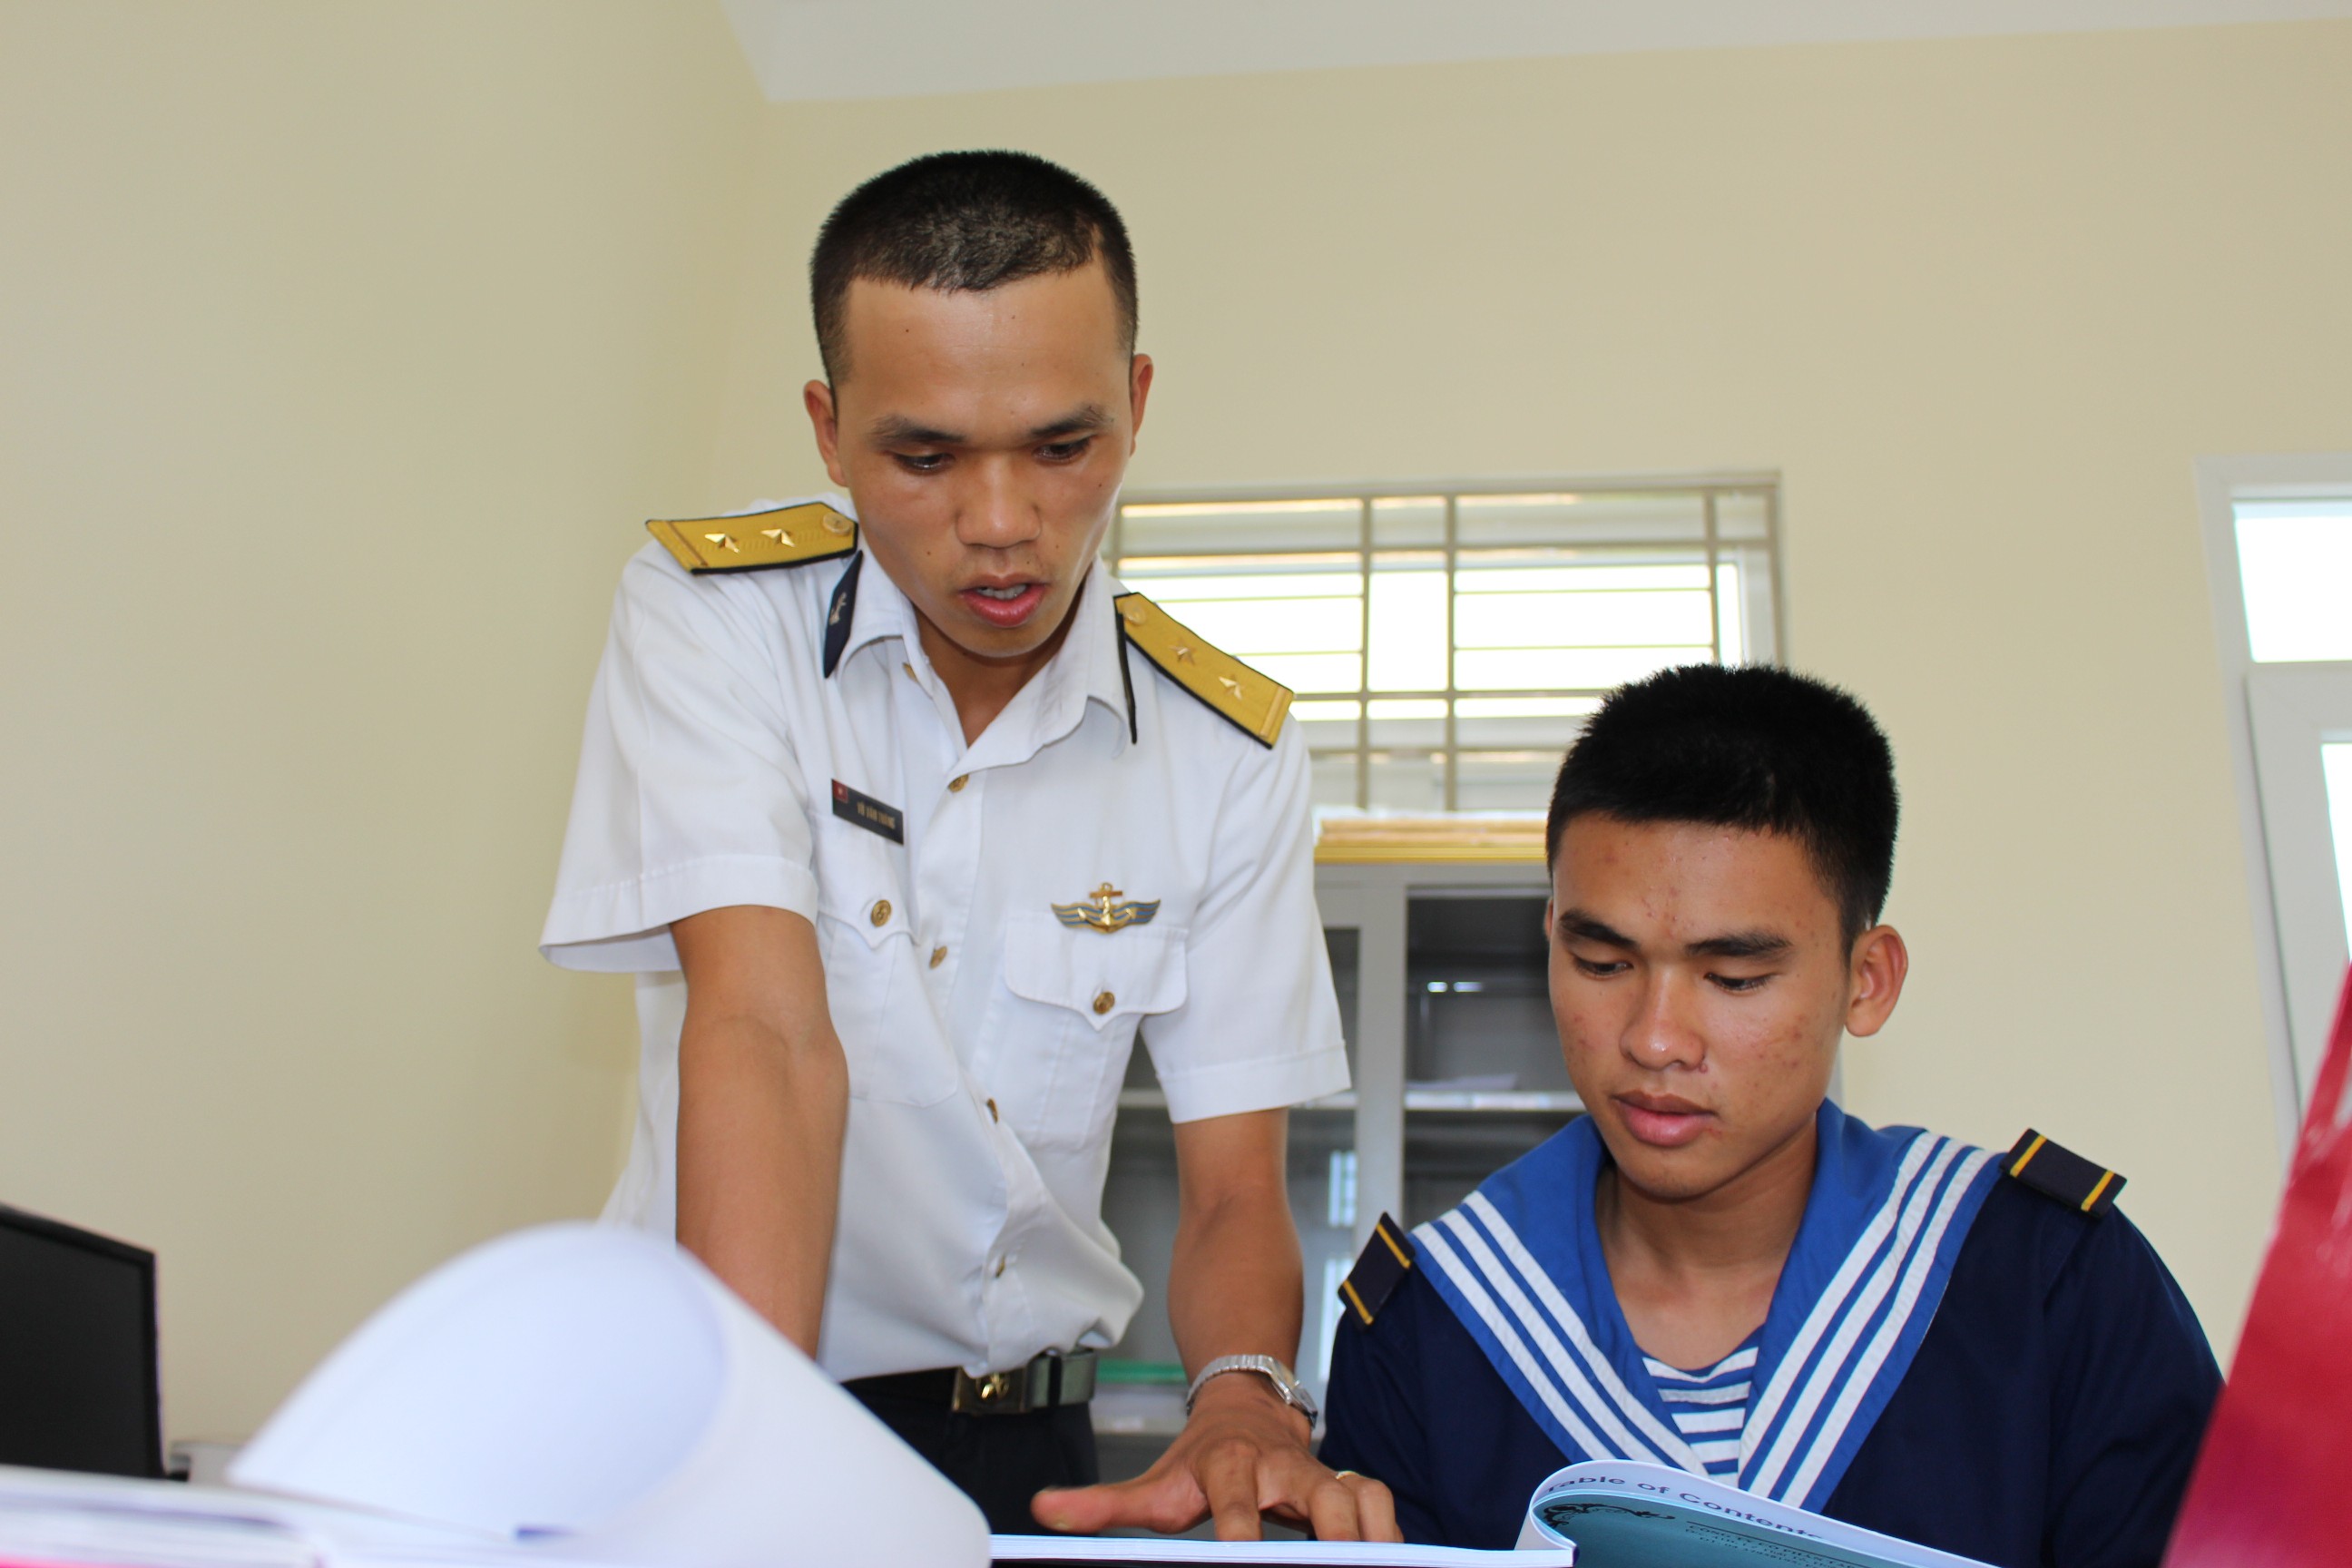 Trung úy Vũ Văn Thắng (phải) dạy tiếng anh kỹ thuật tàu biển cho chiến sĩ Nguyễn Tiến Phát tại Lữ đoàn 171, ảnh Mai Thắng